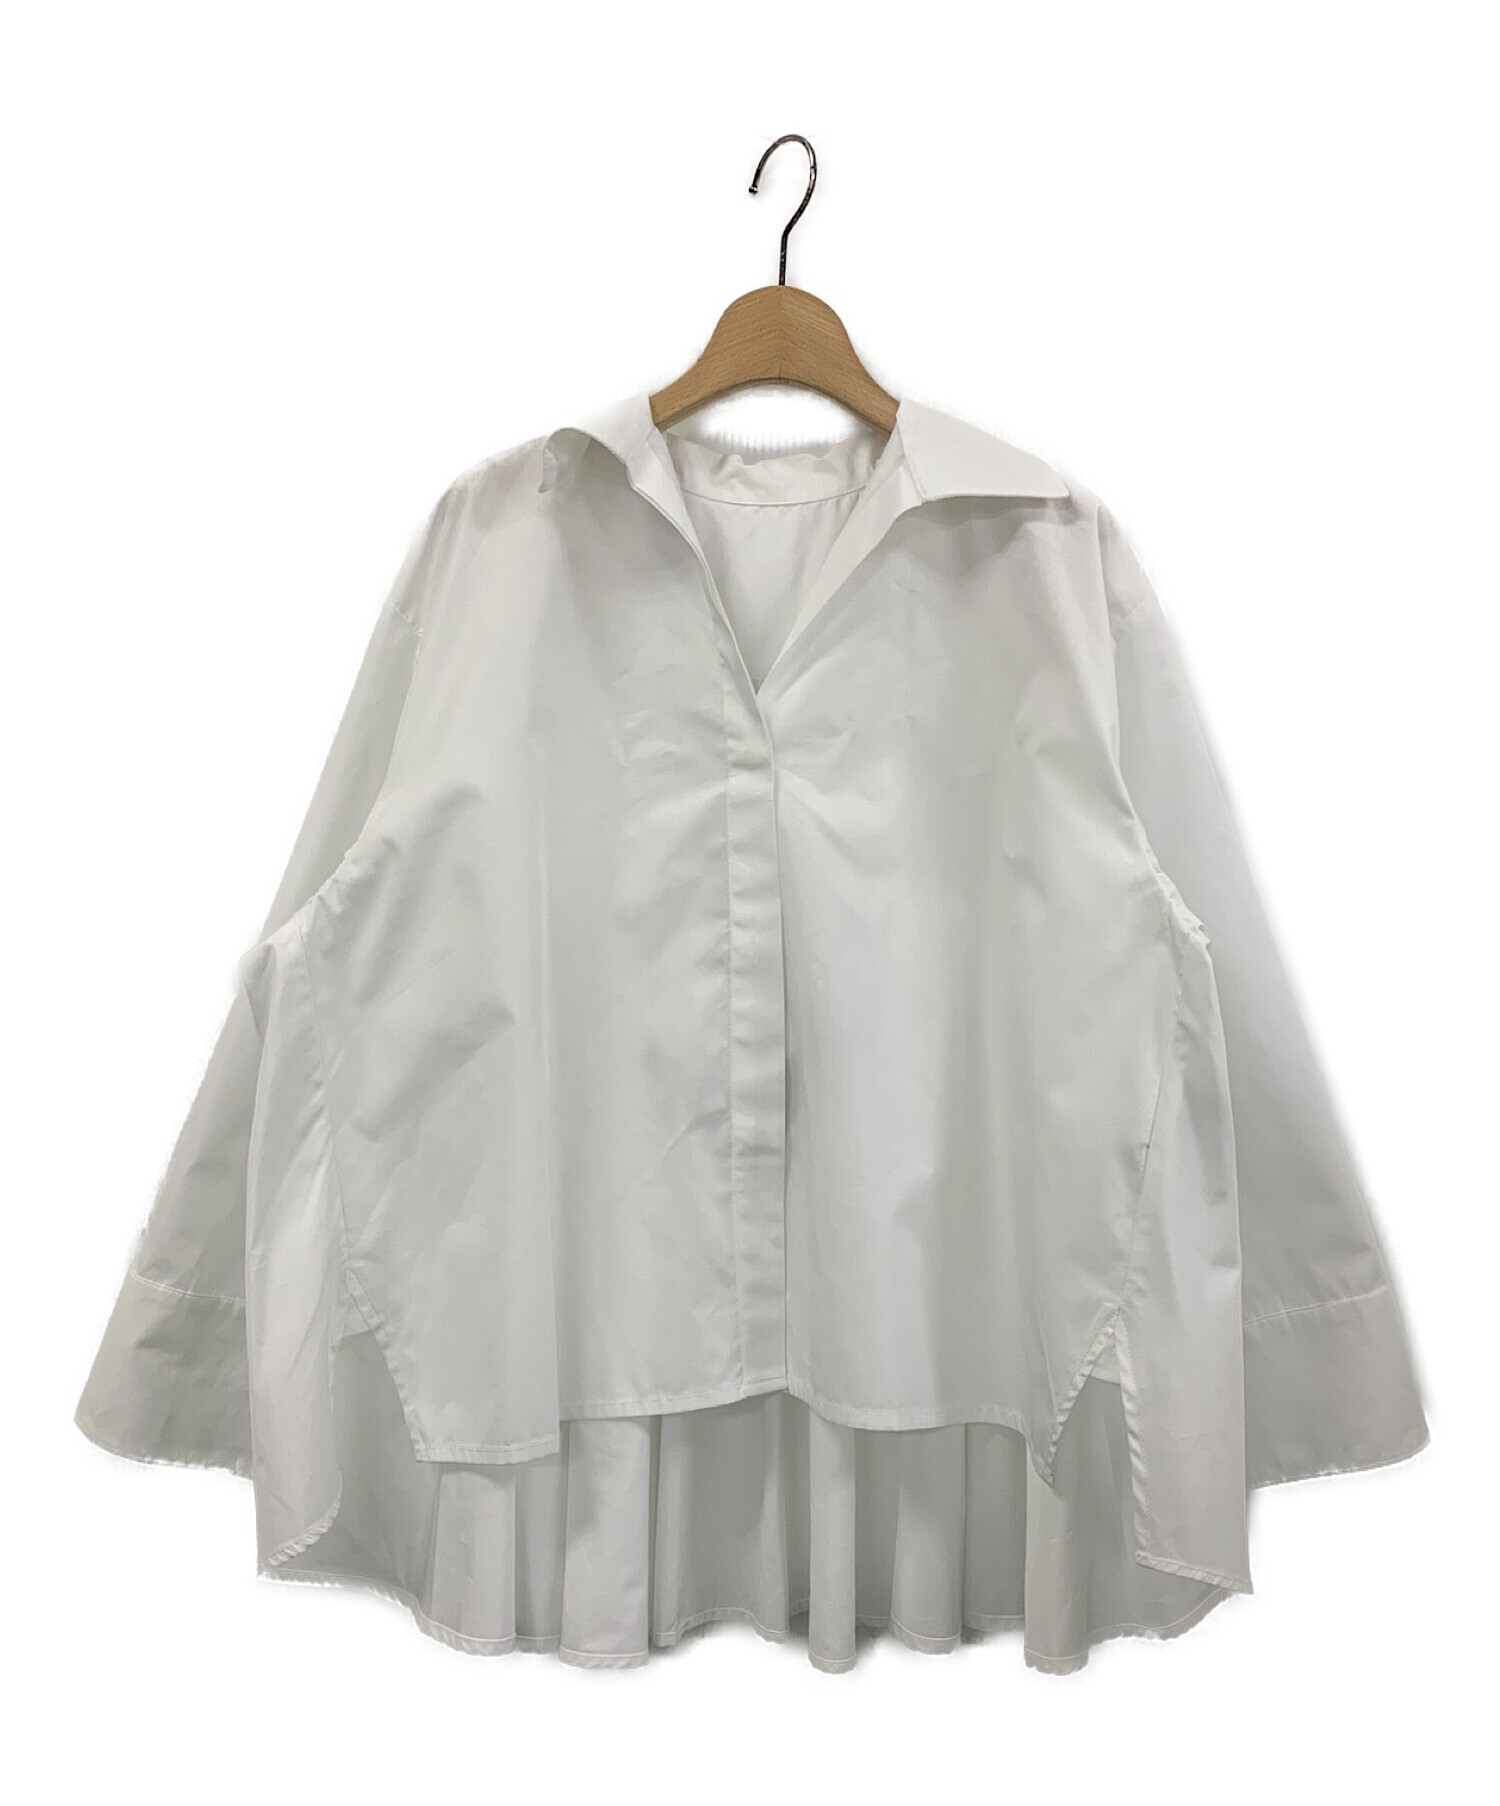 aLORS (アロー) Geraldine / バックギャザーシャツ ホワイト サイズ:One size